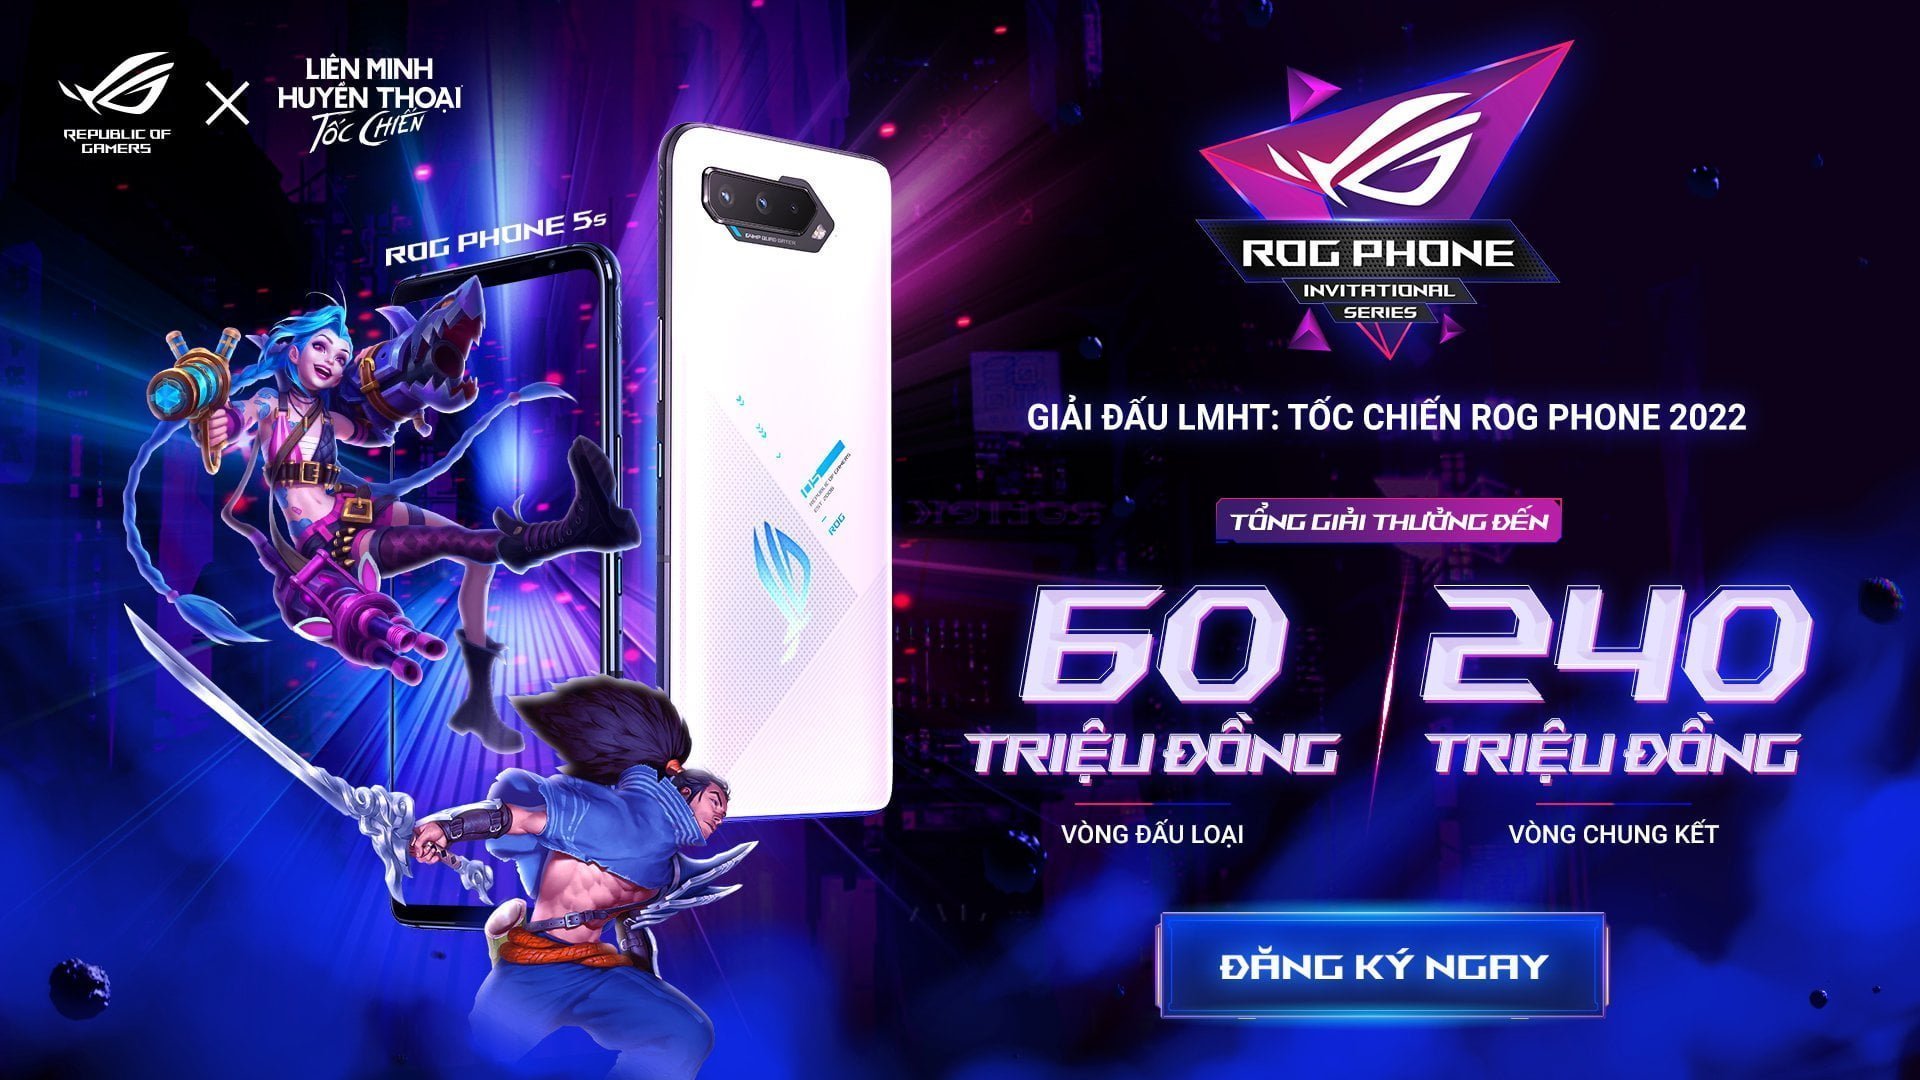 [PR] ASUS ROG và VNG công bố giải đấu ROG Phone Invitational Series 2022 bộ môn thể thao điện tử Liên Minh Huyền Thoại: Tốc Chiến - Image 4